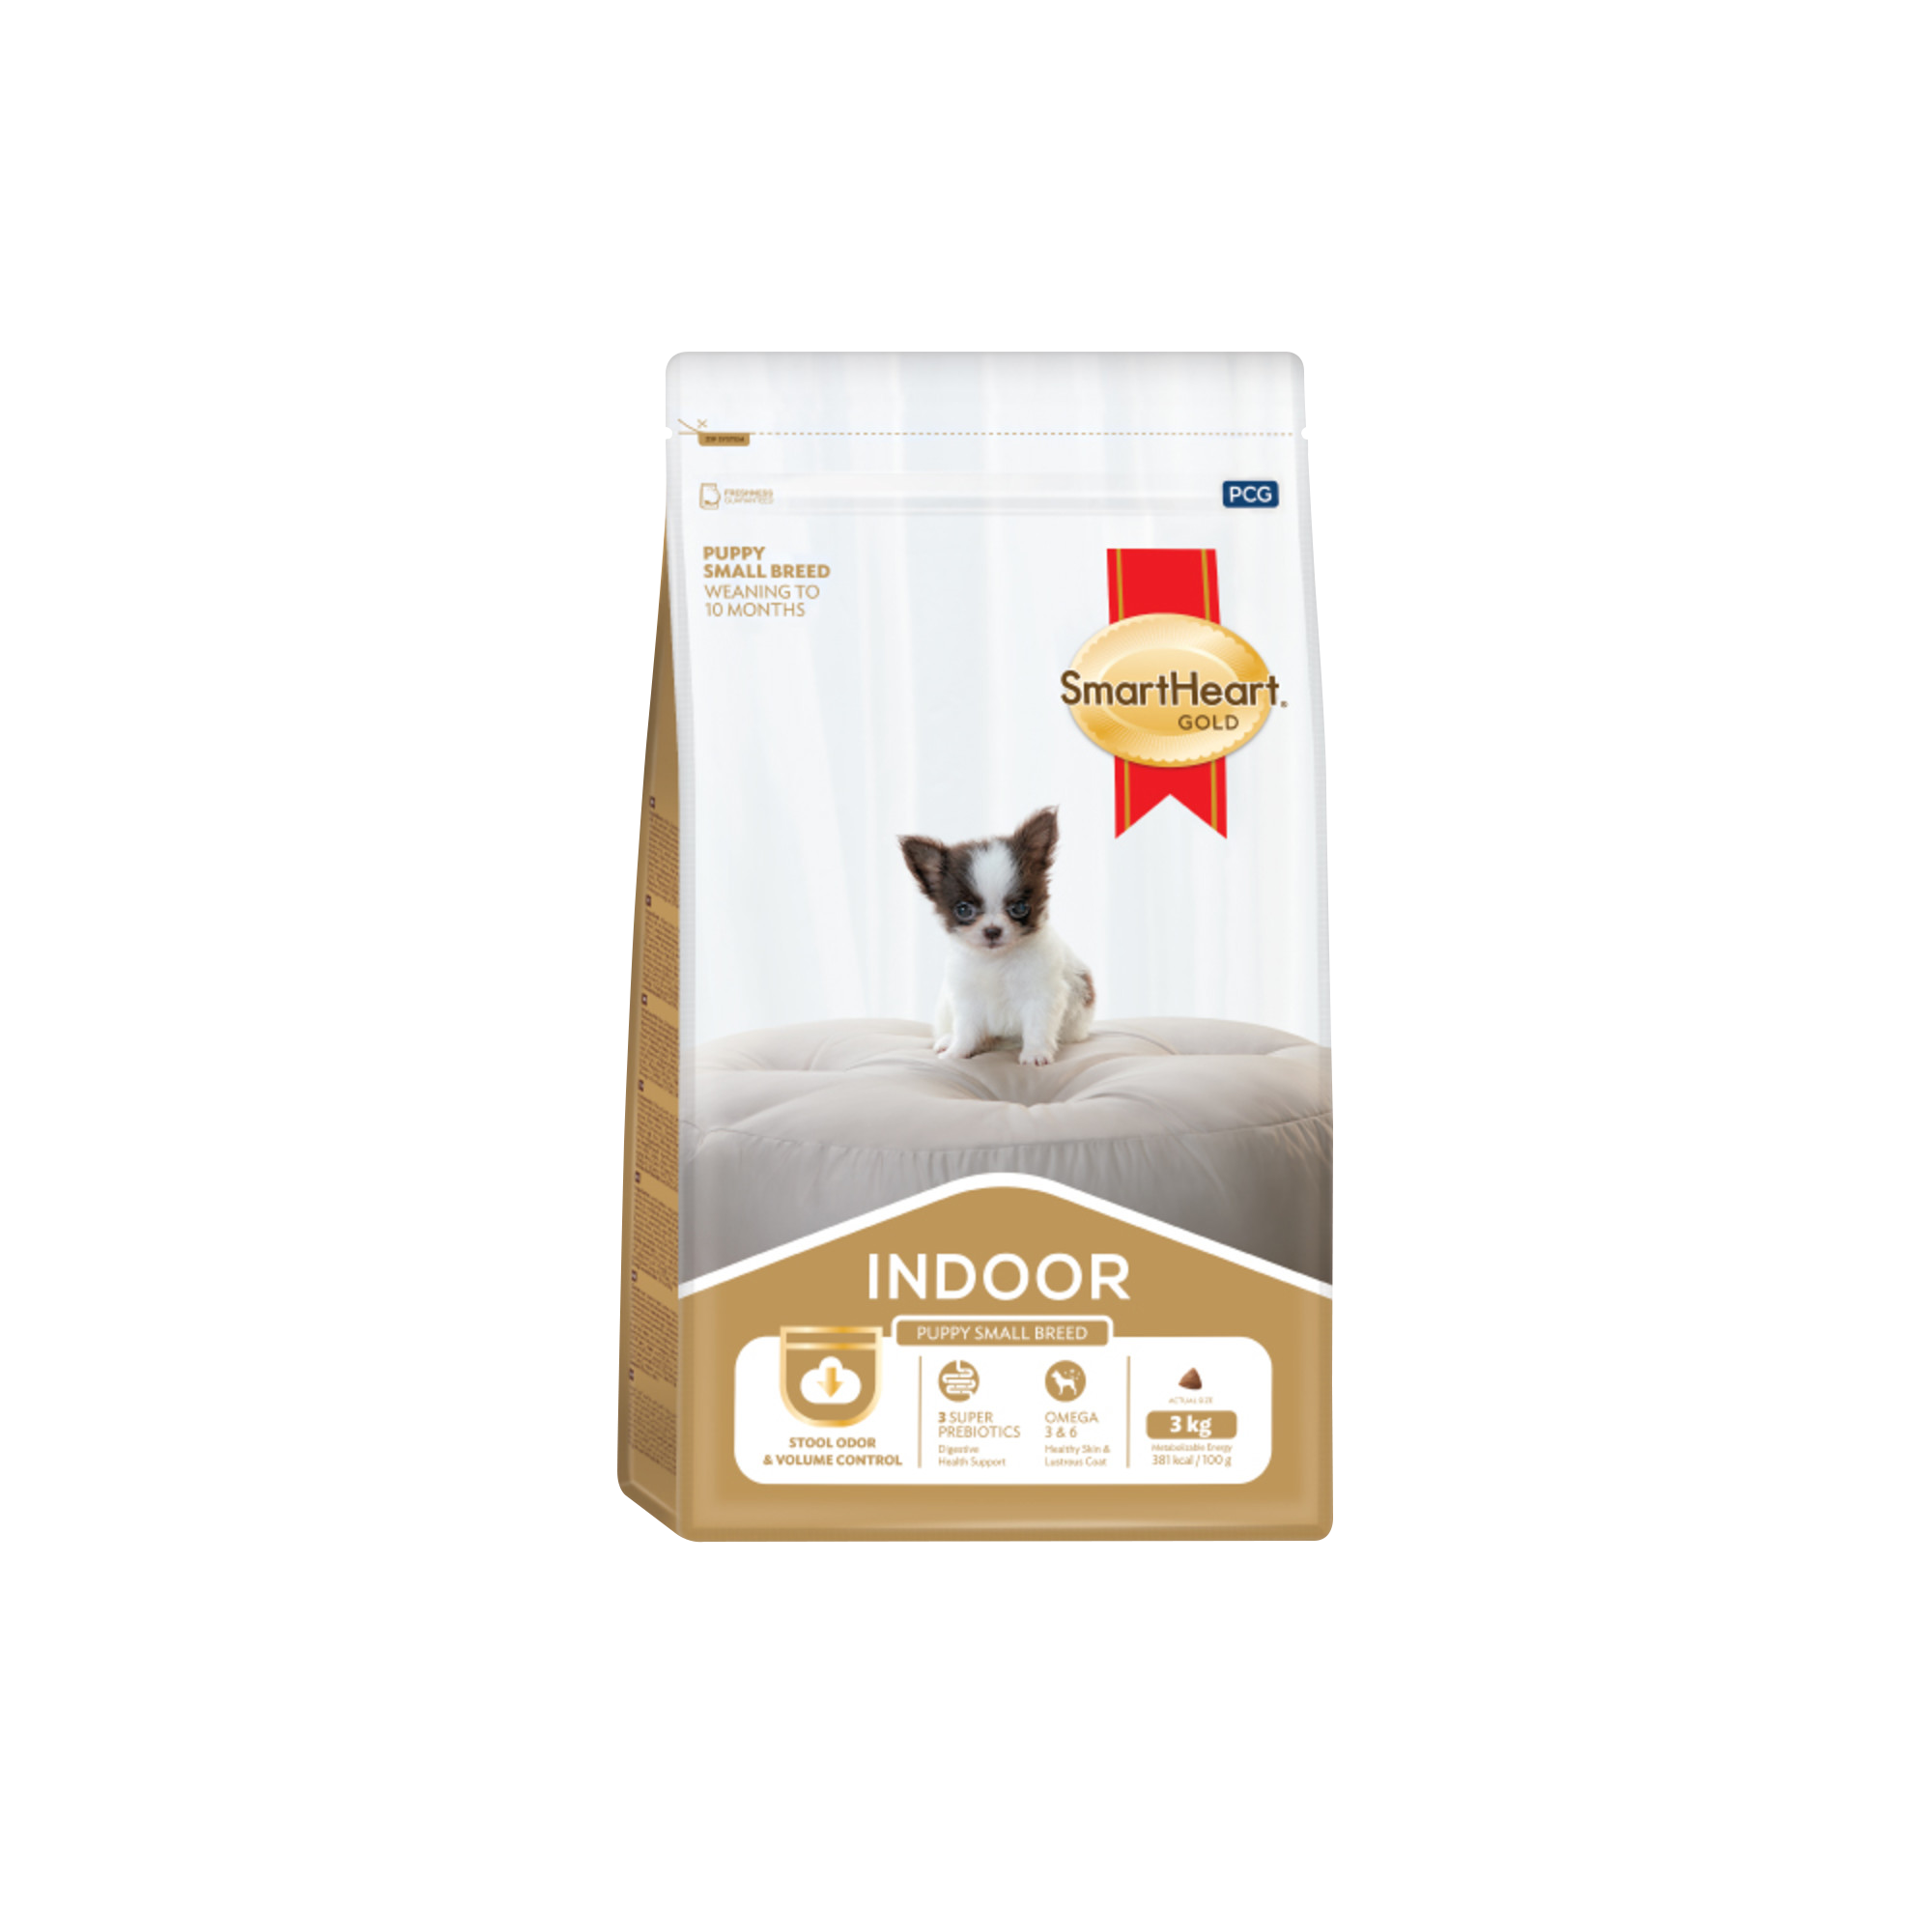 SMARTHEART Gold Indoor Puppy สมาร์ทฮาร์ท โกลด์ อินดอร์ อาหารสำหรับ ลูกสุนัขพันธุ์เล็ก ขนาด 1 กิโลกรัม